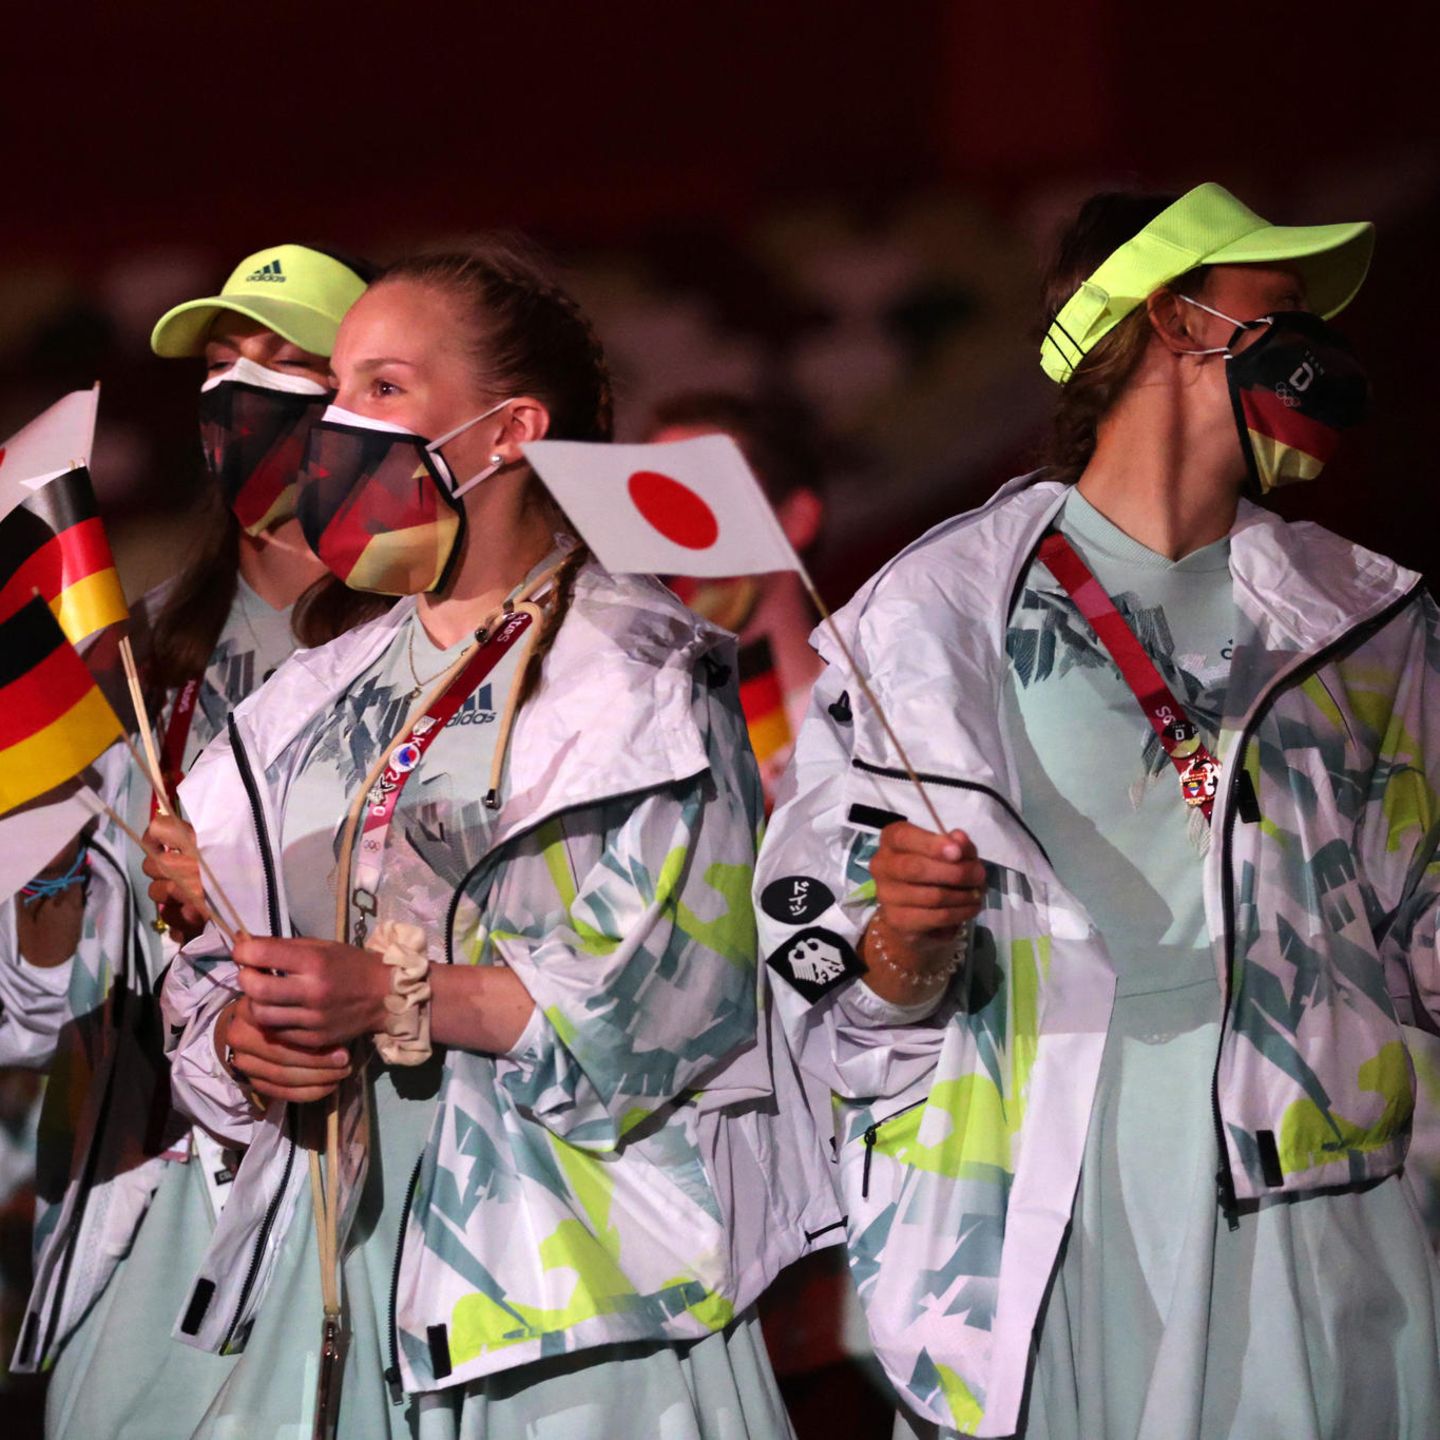 Wer sich das aus?" Adidas verteidigt neon-mintfarbende Olympiakleidung | STERN.de